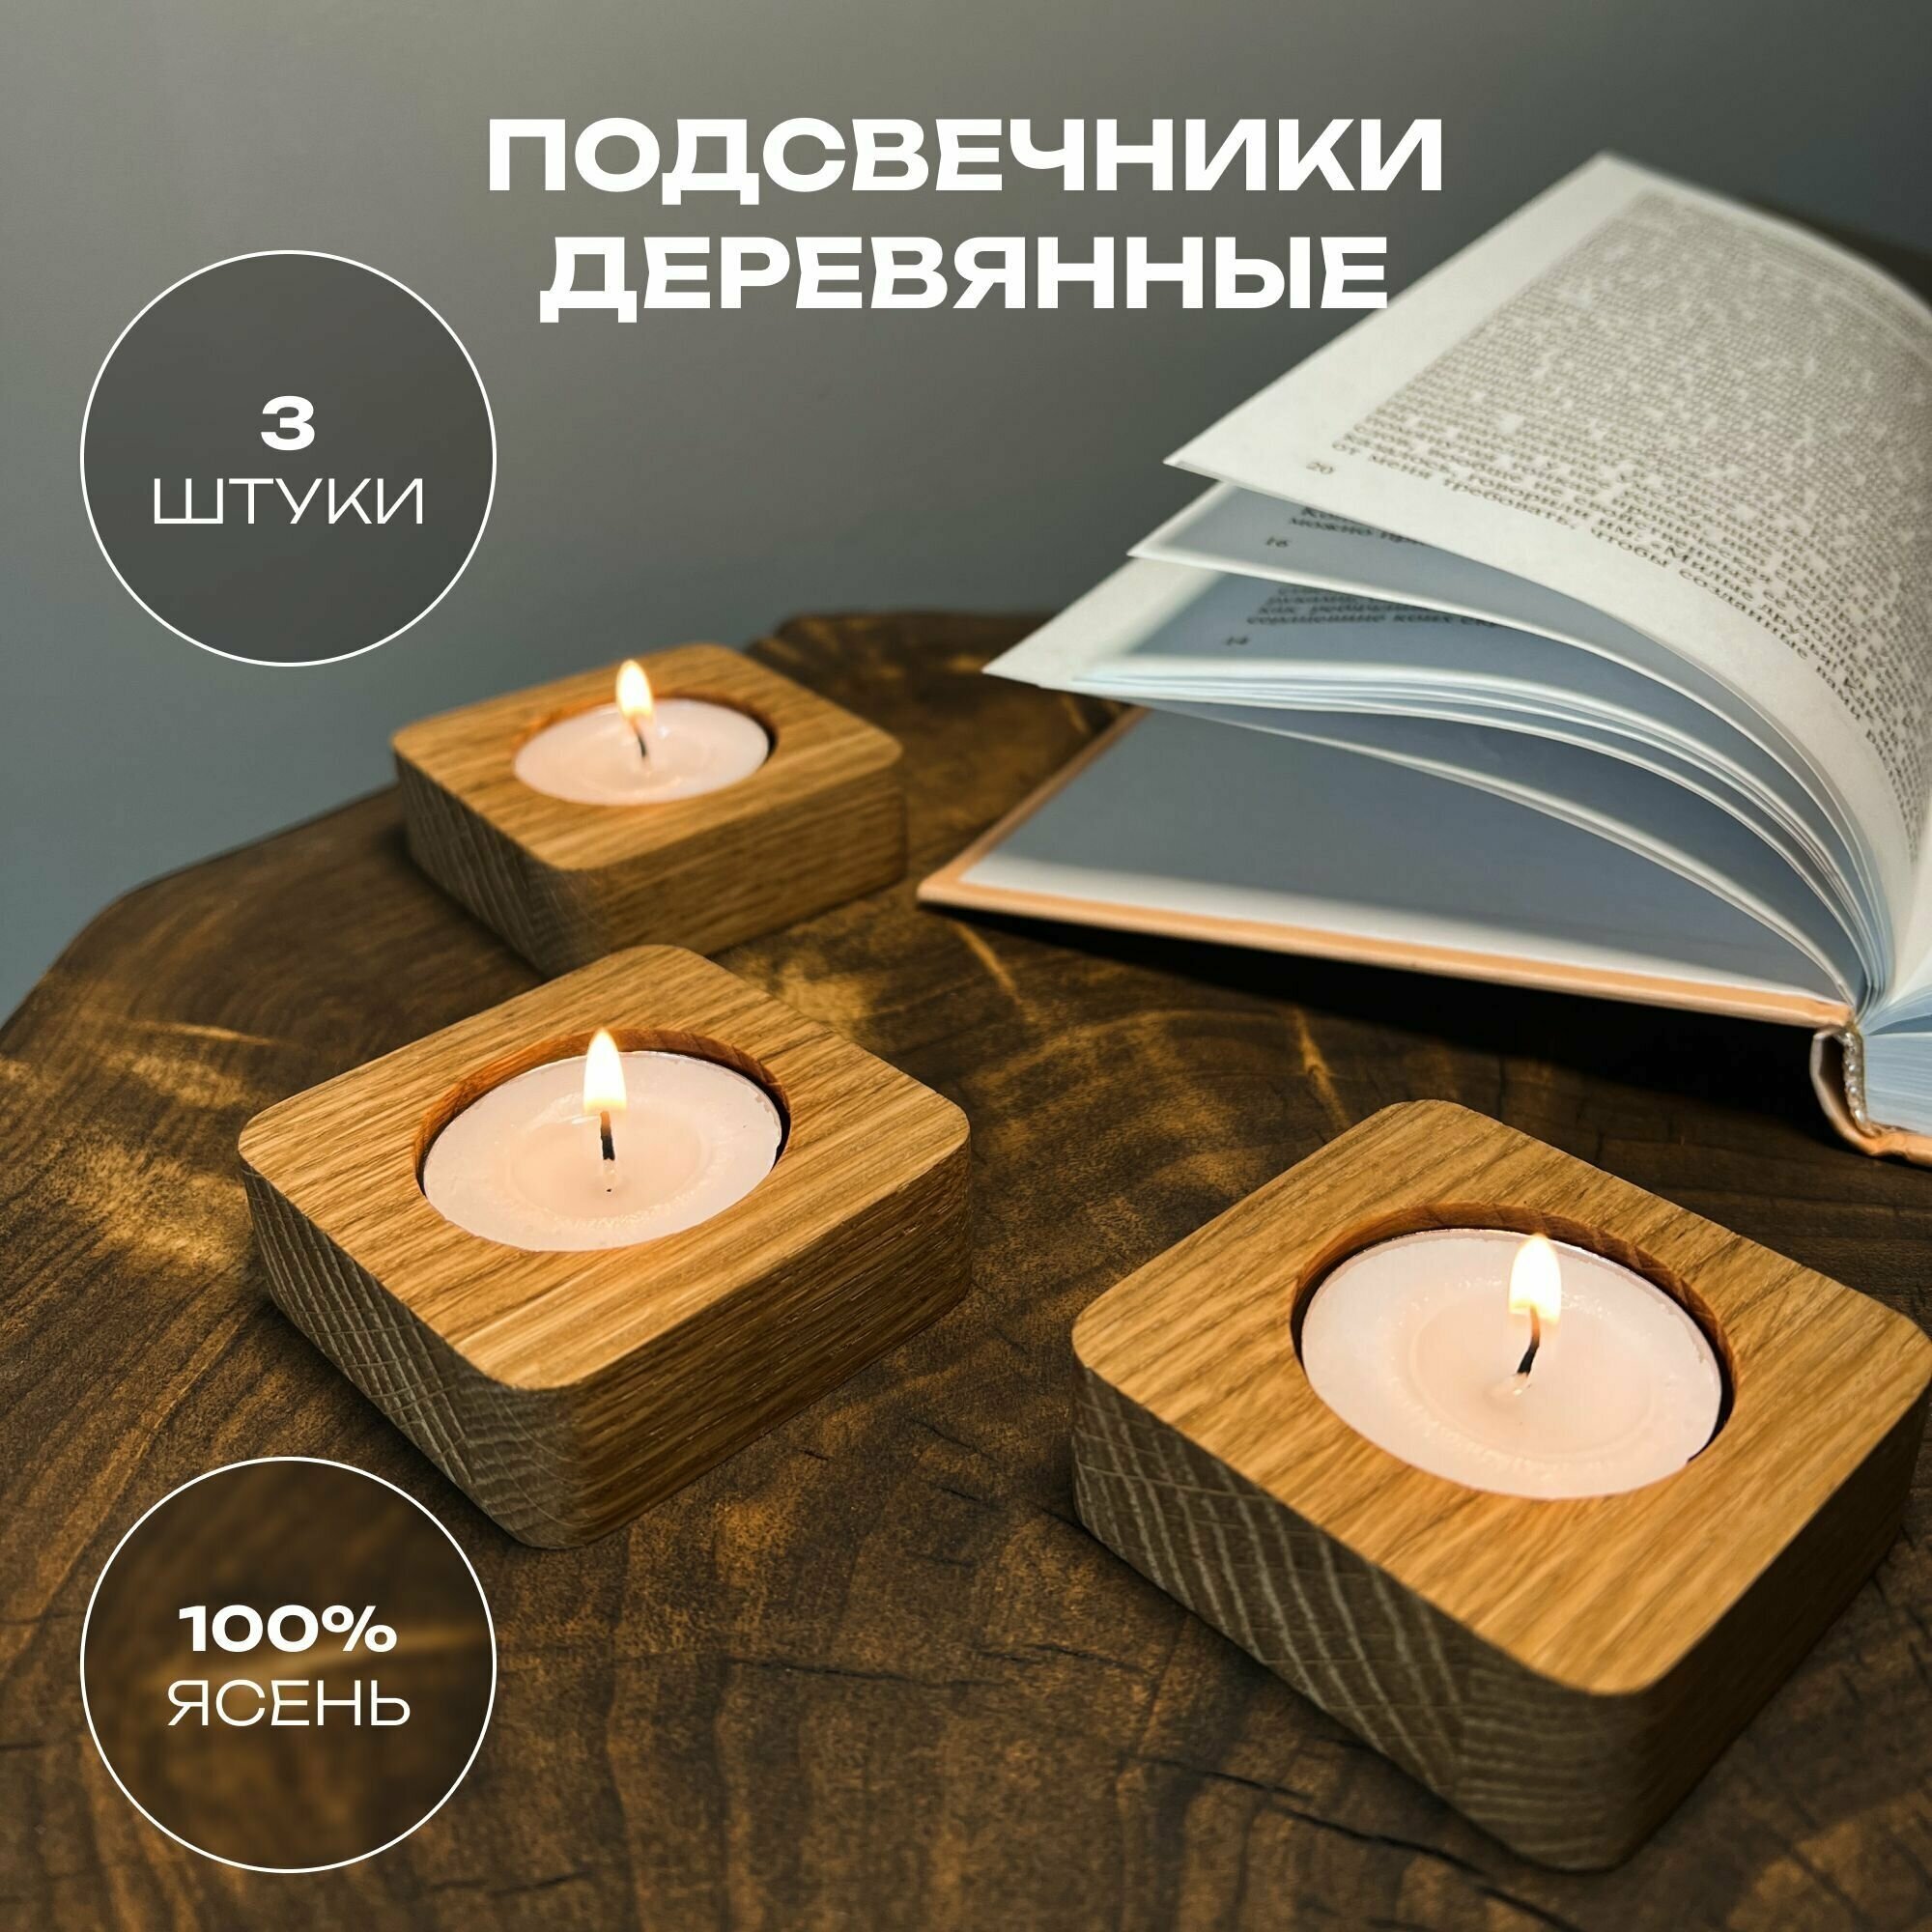 Подсвечники деревянные 3 штуки квадратные из натурального дерева в комплекте с чайными свечами квадрат - фотография № 1